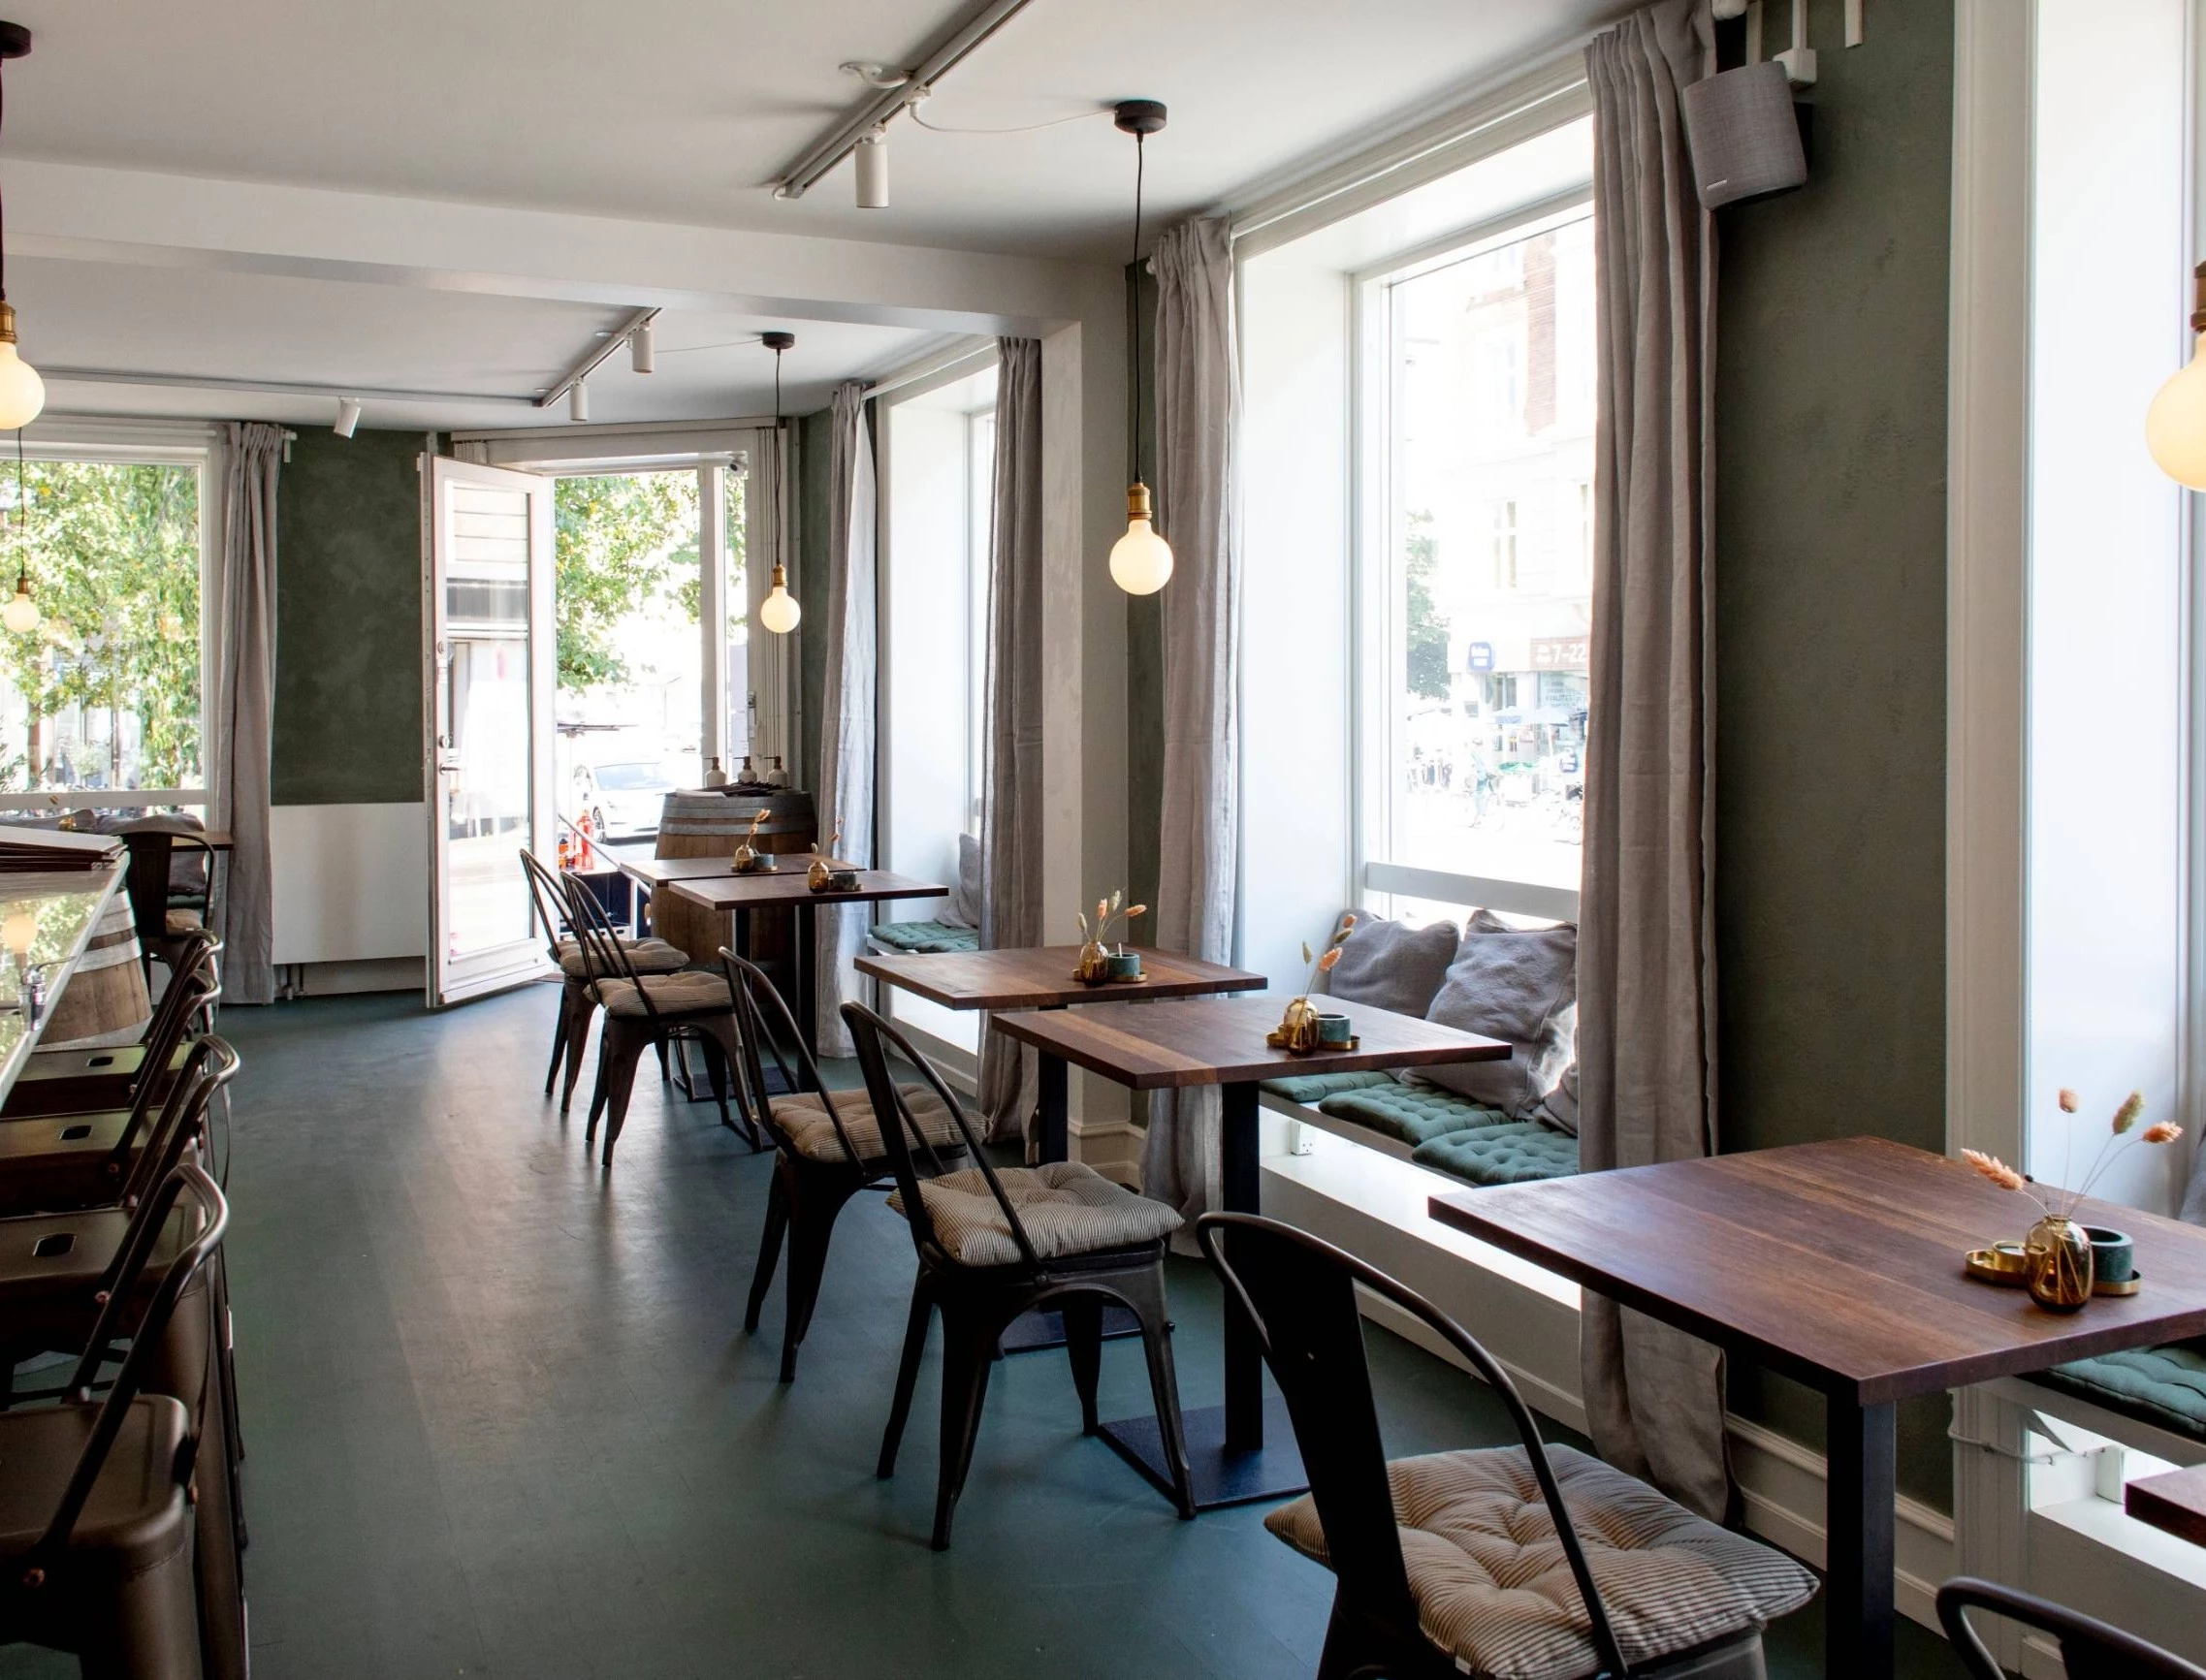 Oluf’s Taverna bringer god kaffe, italienske specialiteter og middelhavsstemning til Østerbro